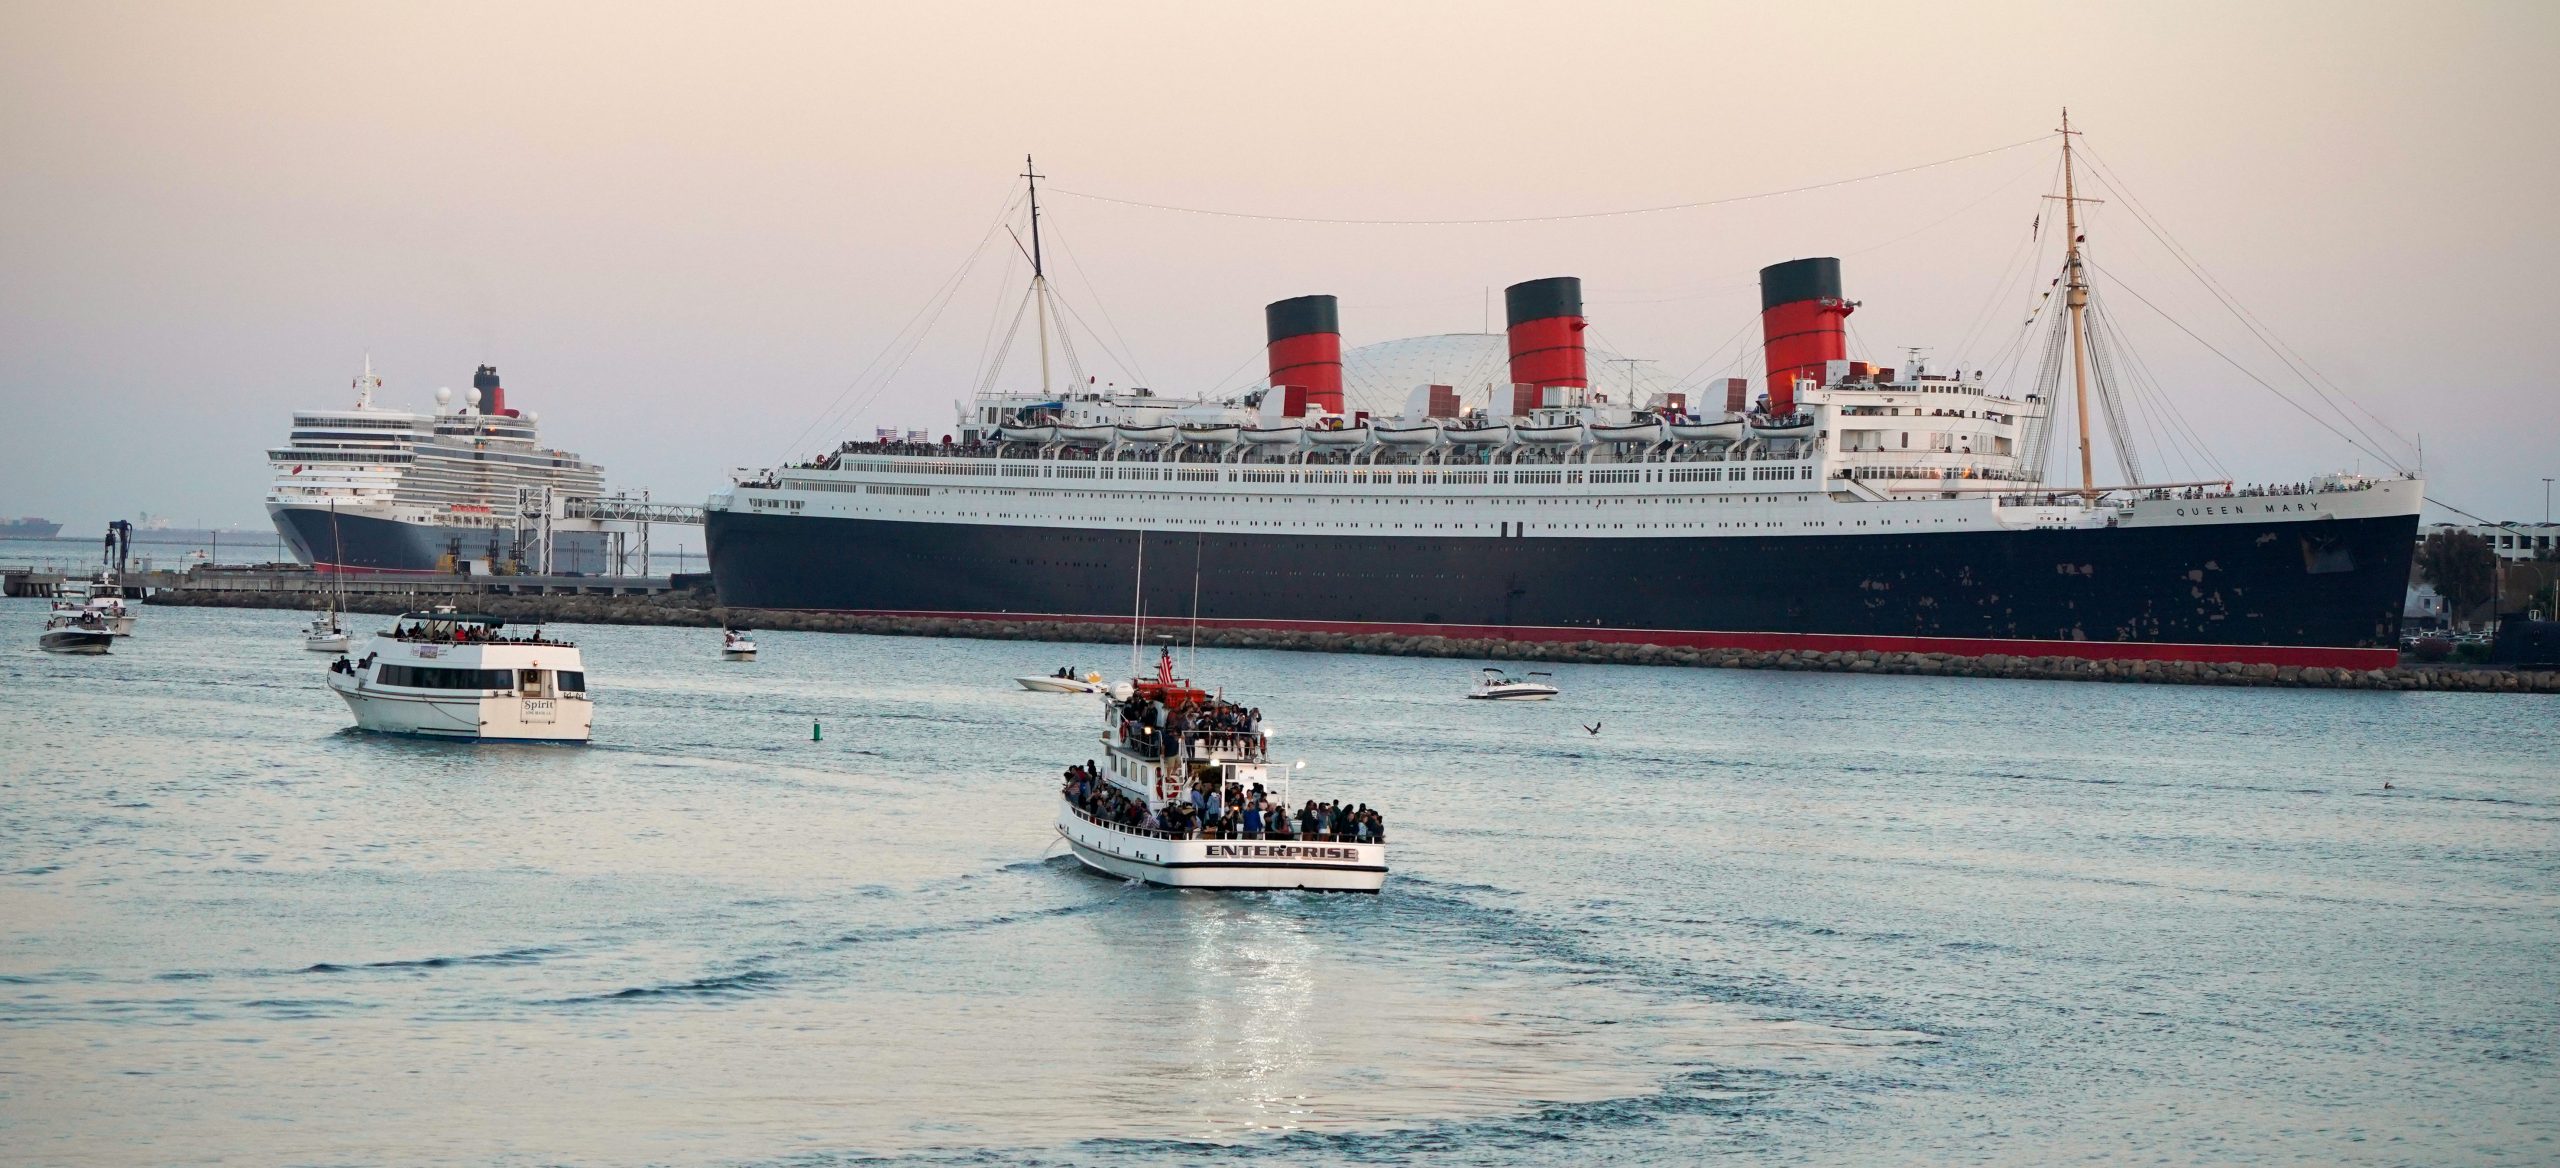 Queen Mary ocean liner